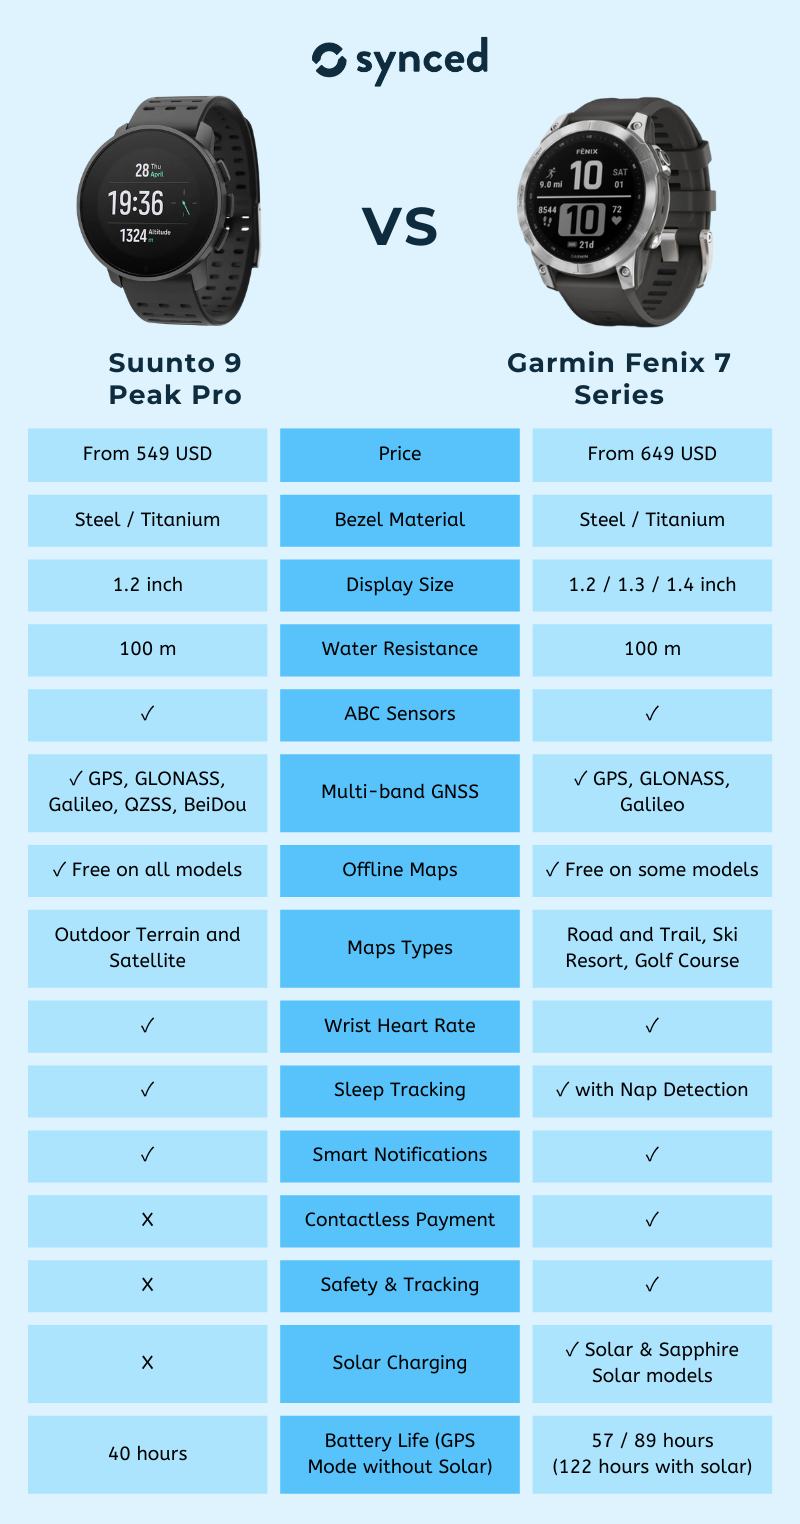 Suunto 9 Peak Pro vs Garmin Fenix 7